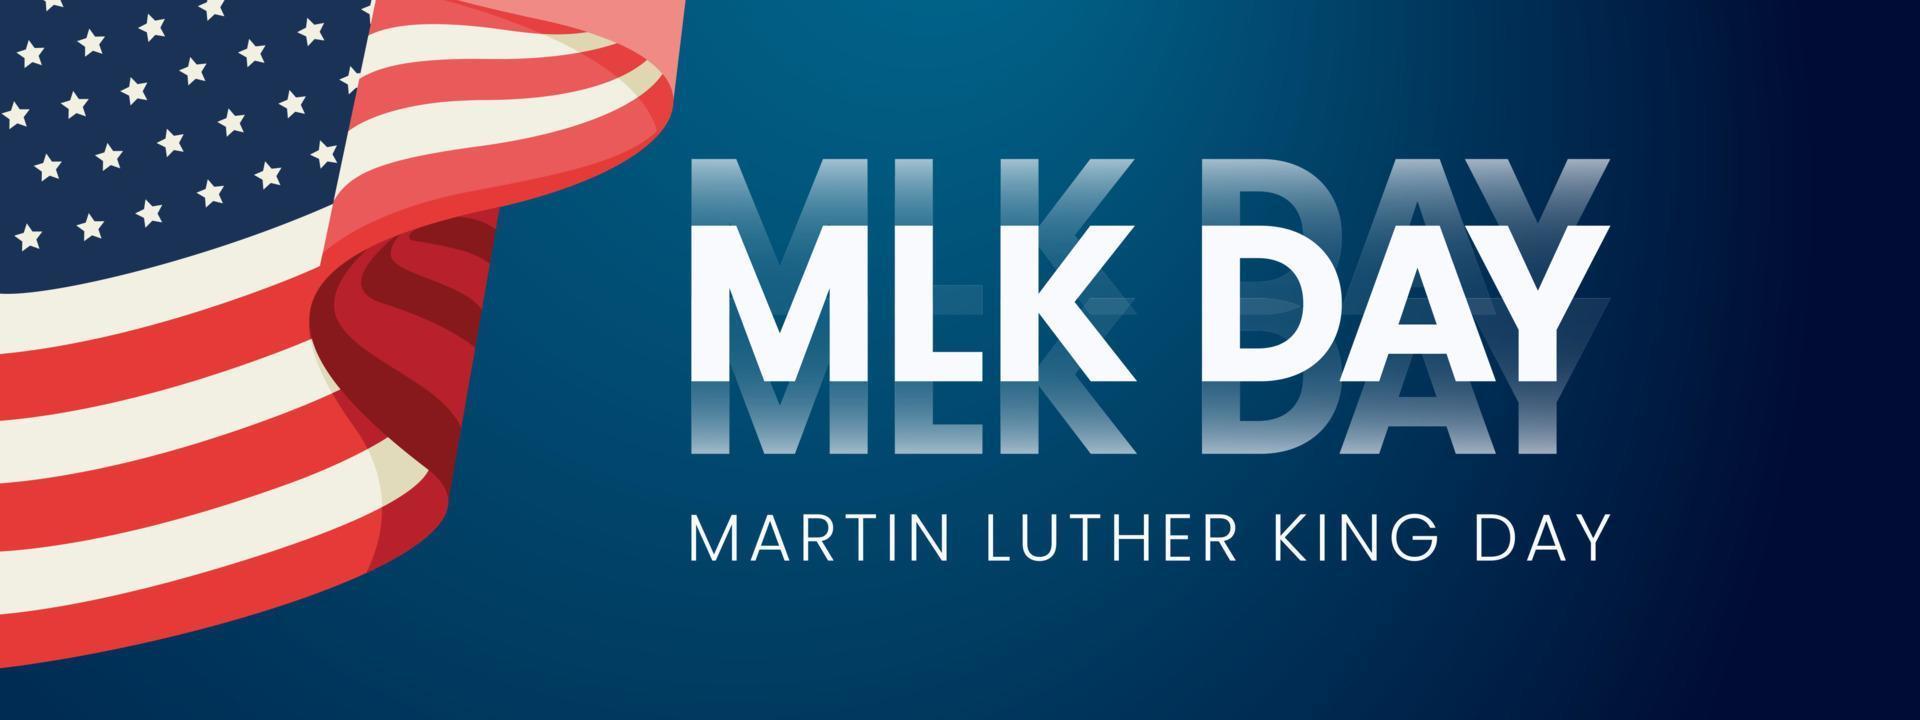 Martin Luther King Júnior. dia design de cartão de tipografia. citação inspiradora de letras do dia mlk, bandeira americana, fundo vetorial azul escuro - a hora é sempre certa para fazer o que é certo. eps 10. vetor